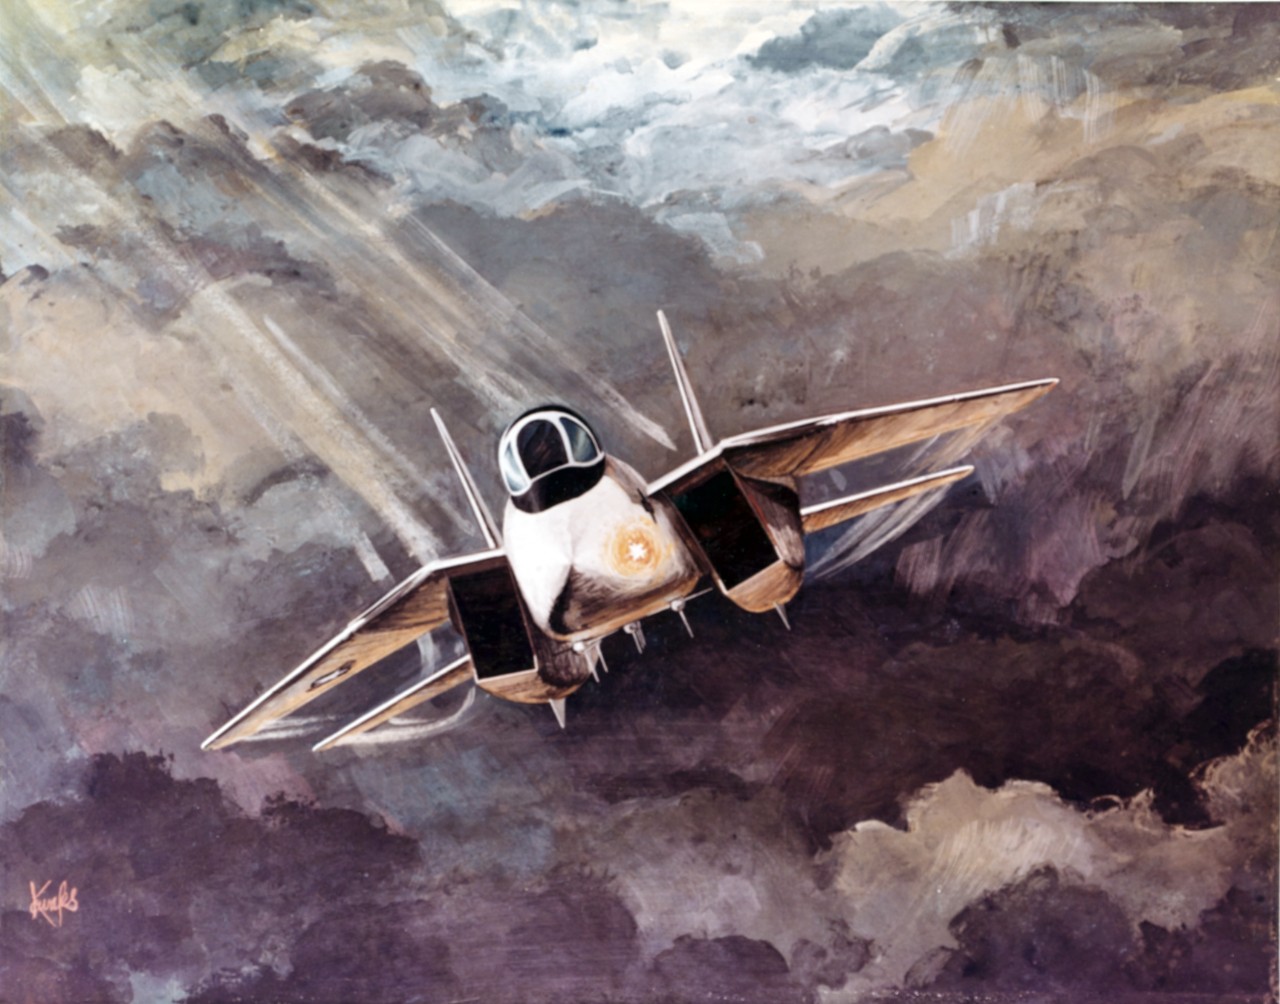 Grumman F-14 "Tomcat"